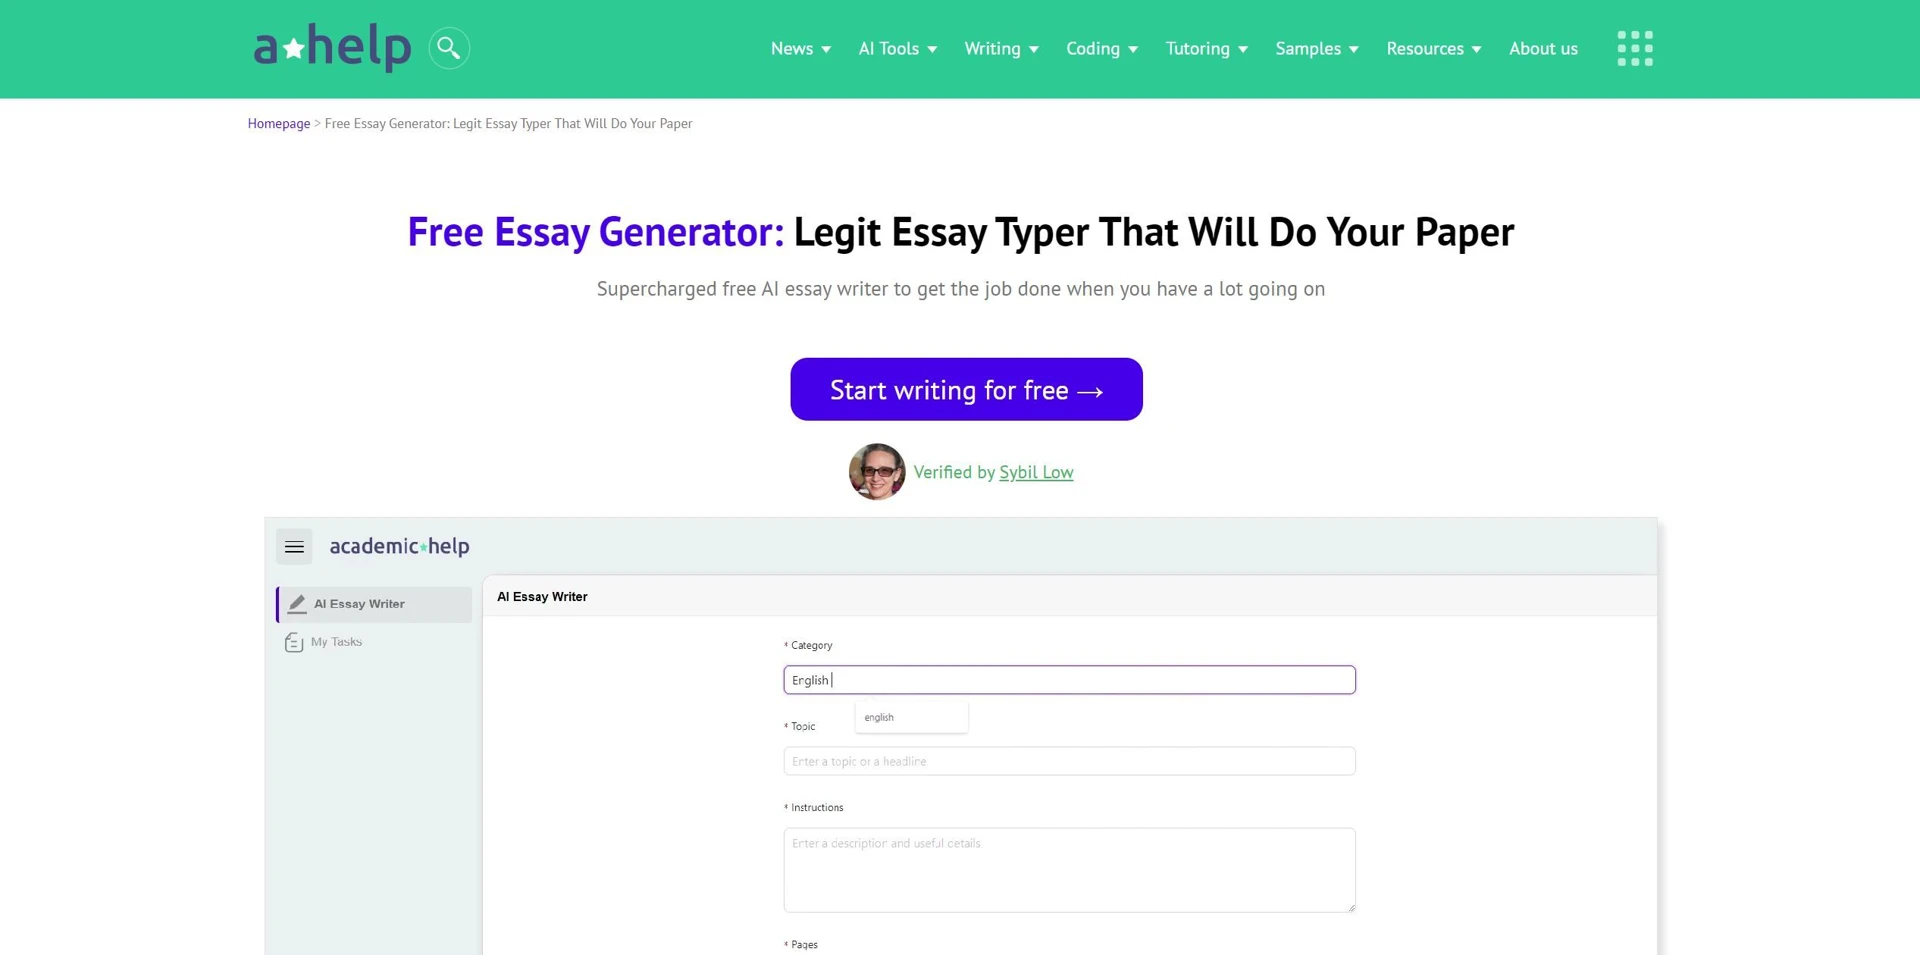 Free Essay Generatorwebsite picture